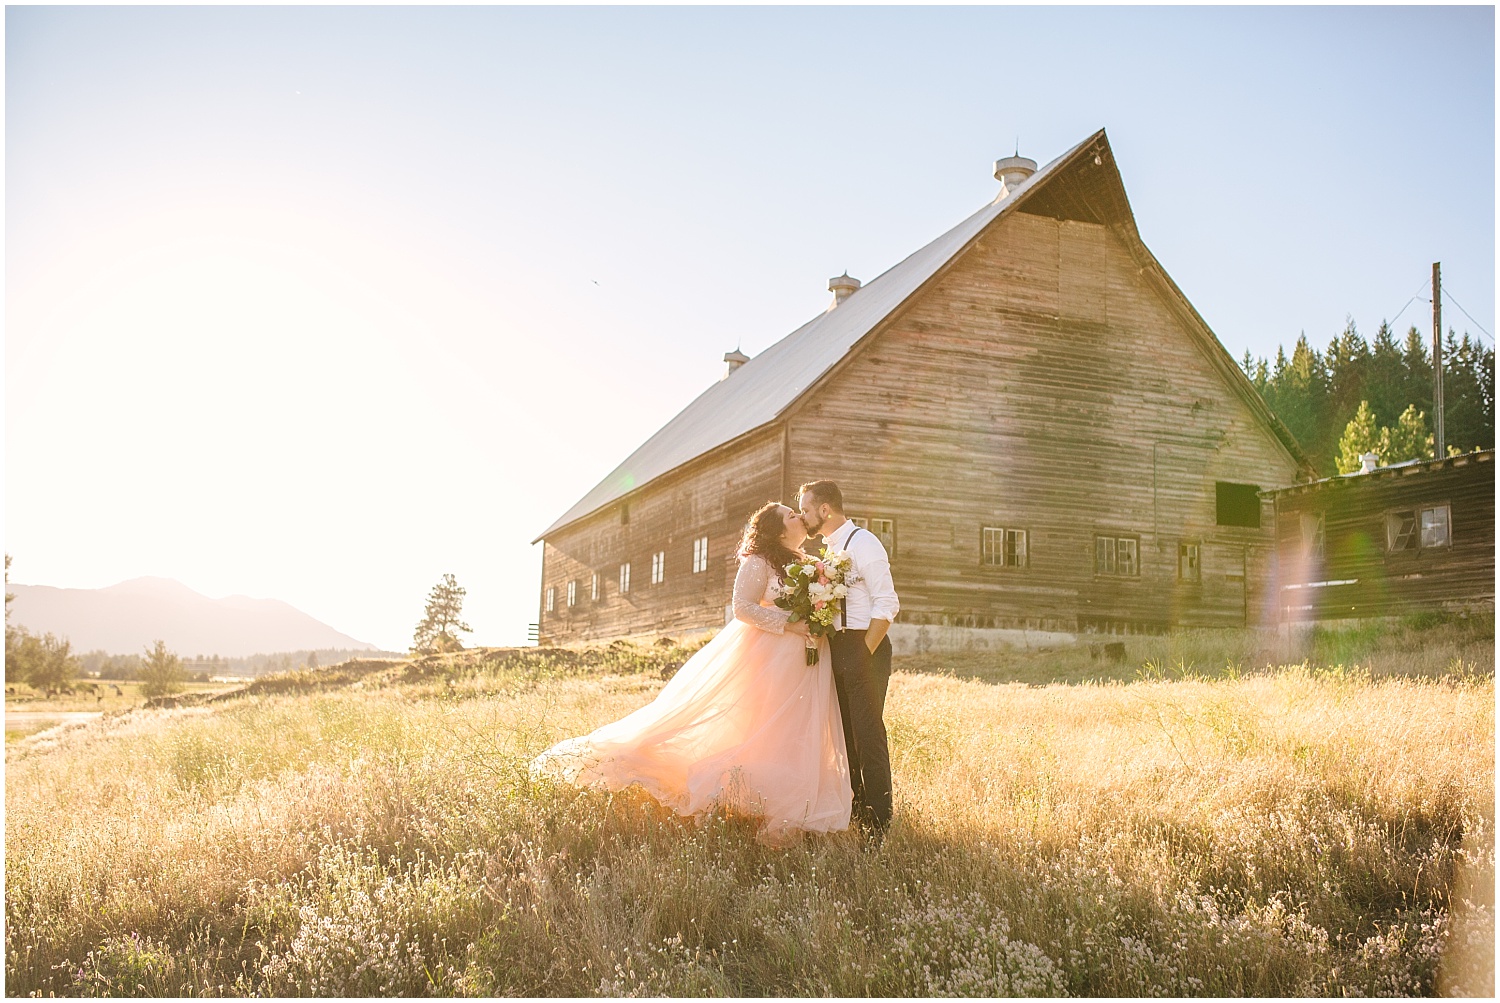 Intimate mountain cabin wedding photos | Colorado Springs wedding photographer